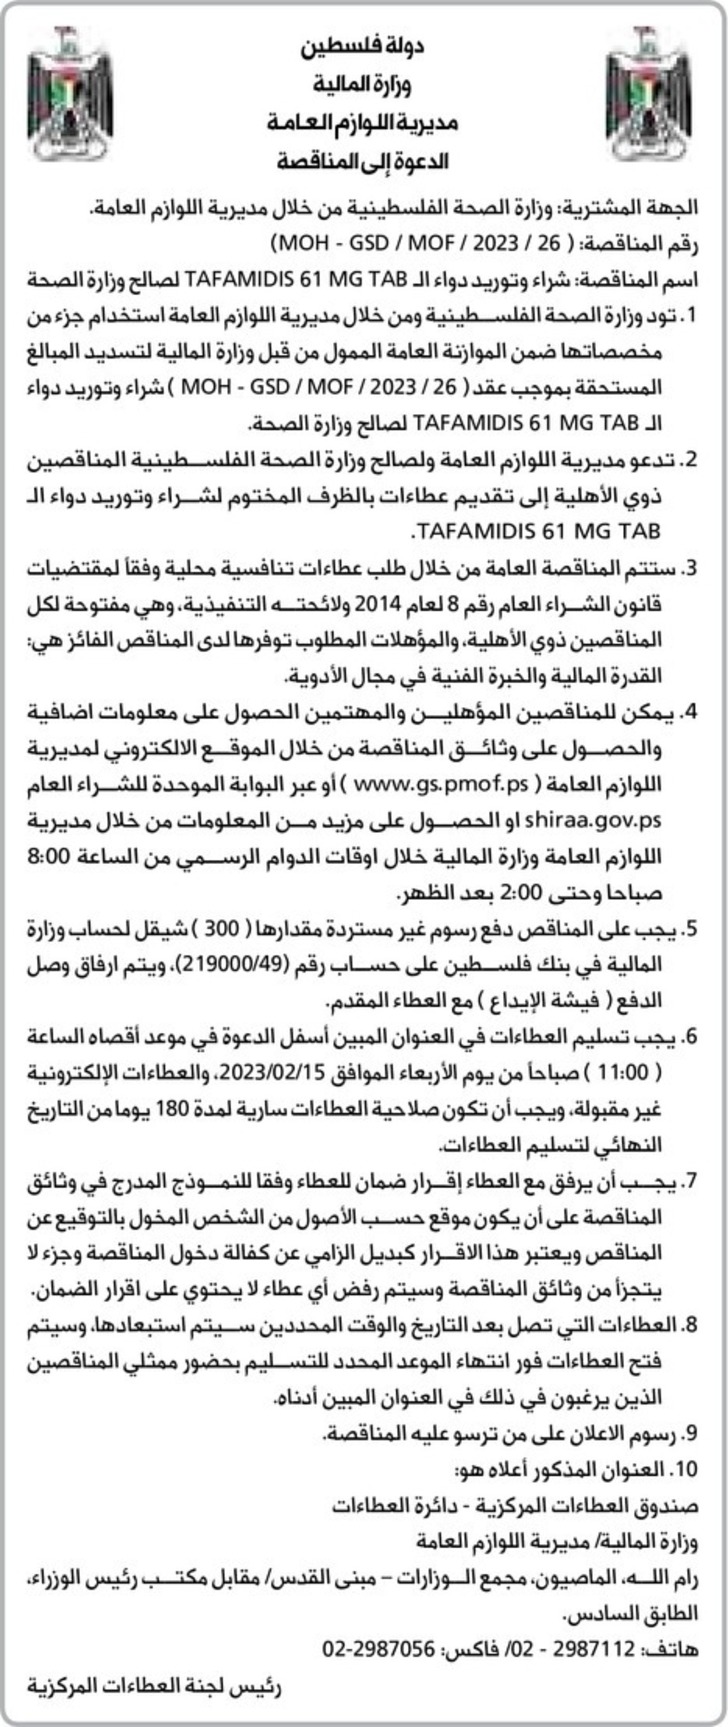 شراء وتوريد دواء الـ TAFAMIDIS 61 MG TAB لصالح وزارة الصحة